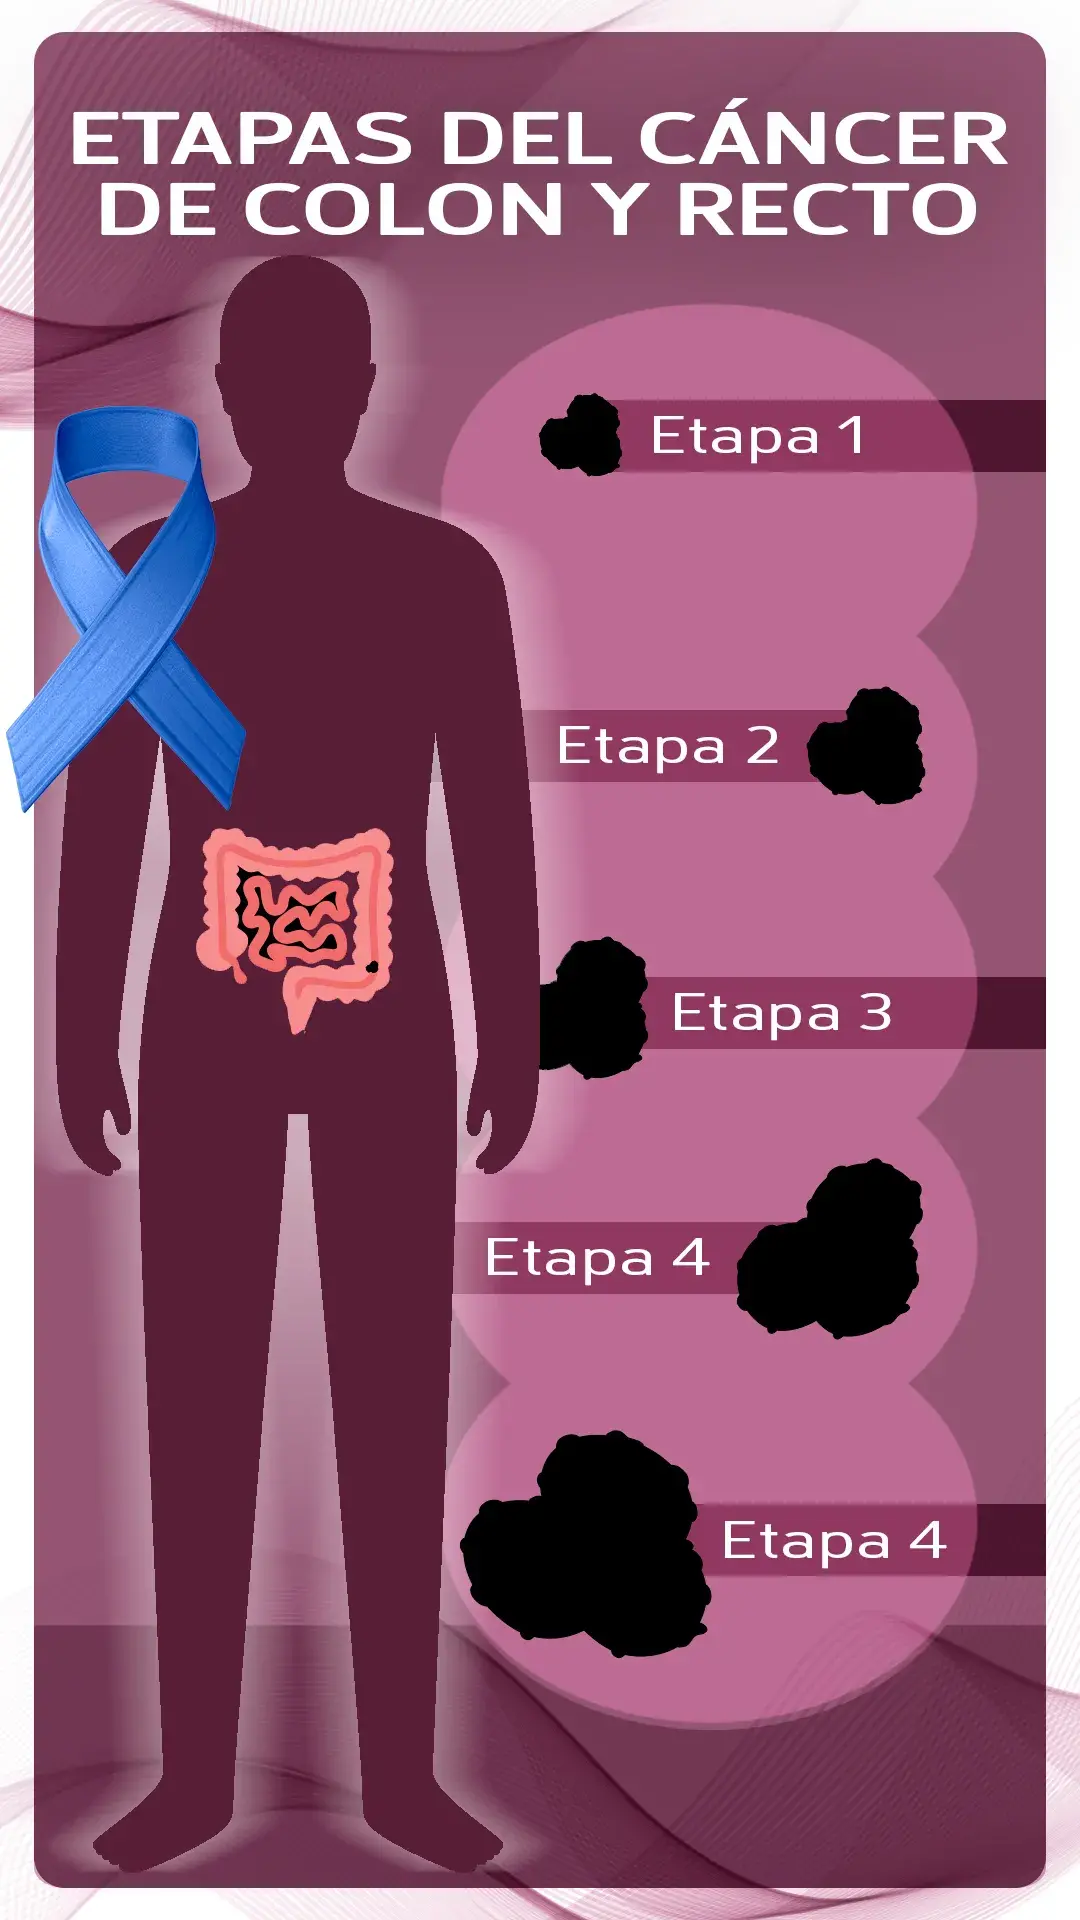 etapas del cáncer de colon y recto ( etapa 1, etapa 2, etapa 3, etapa 4).